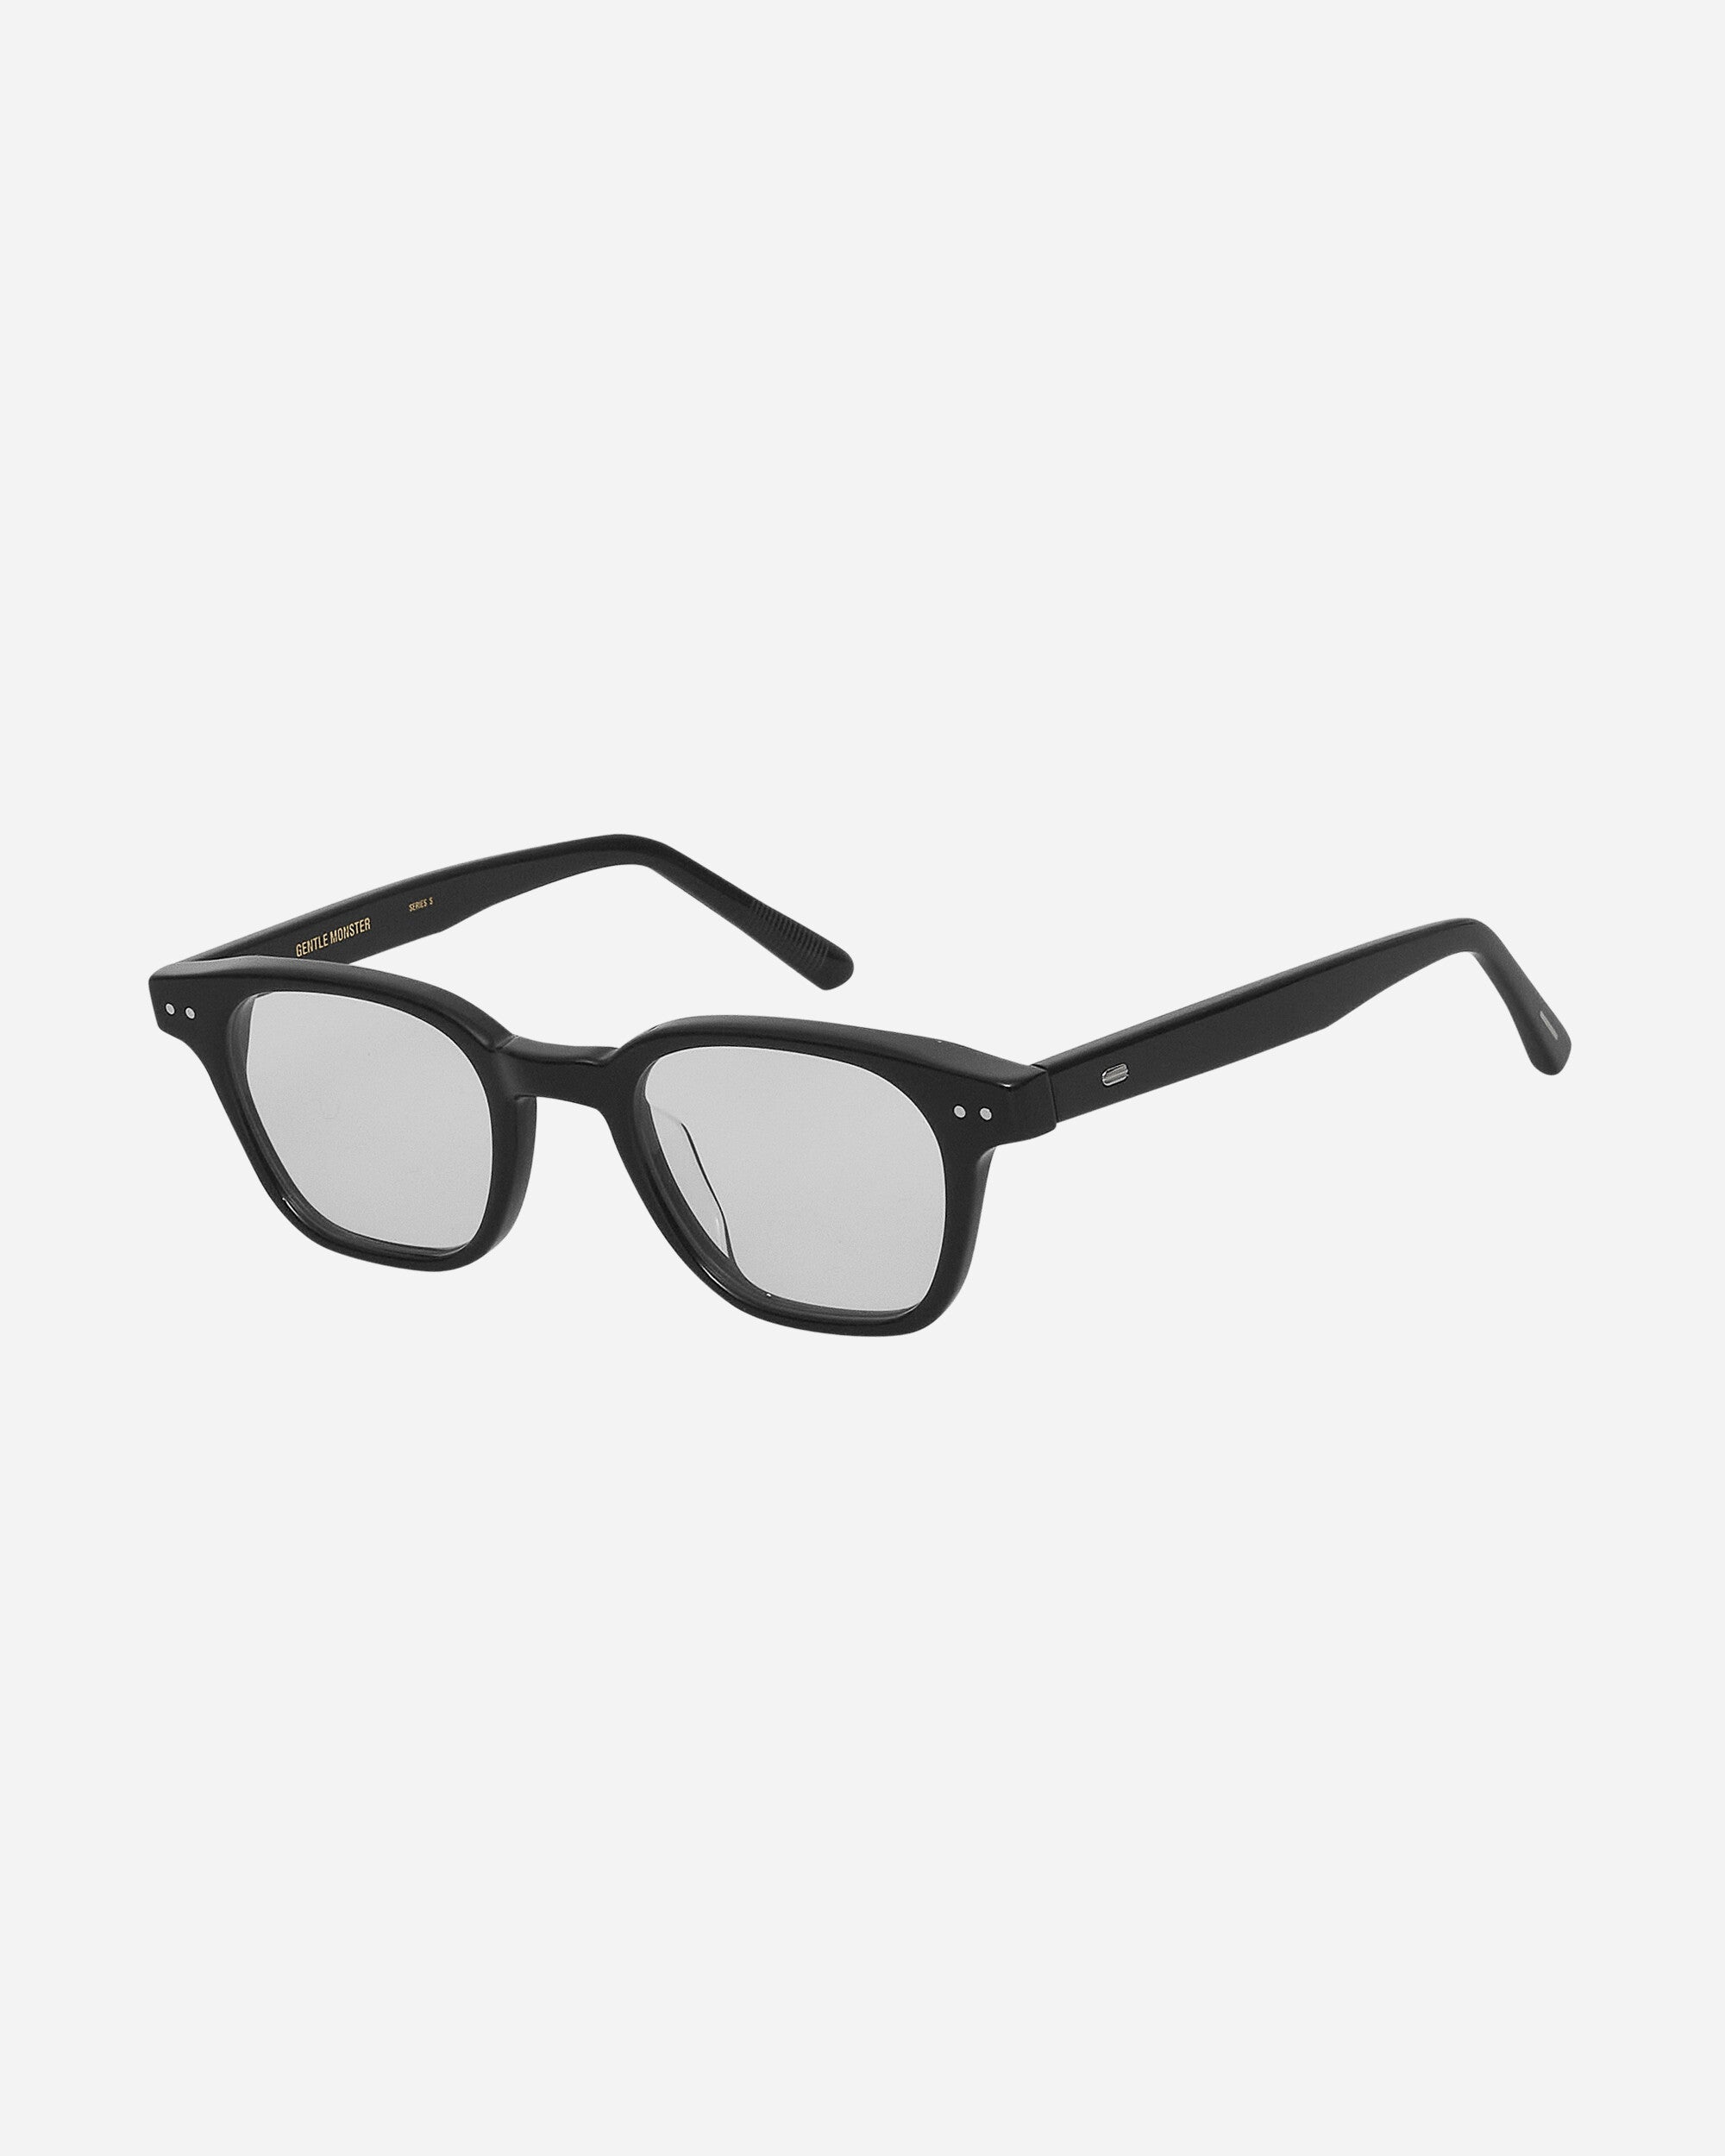 Cato 01 Sunglasses Black